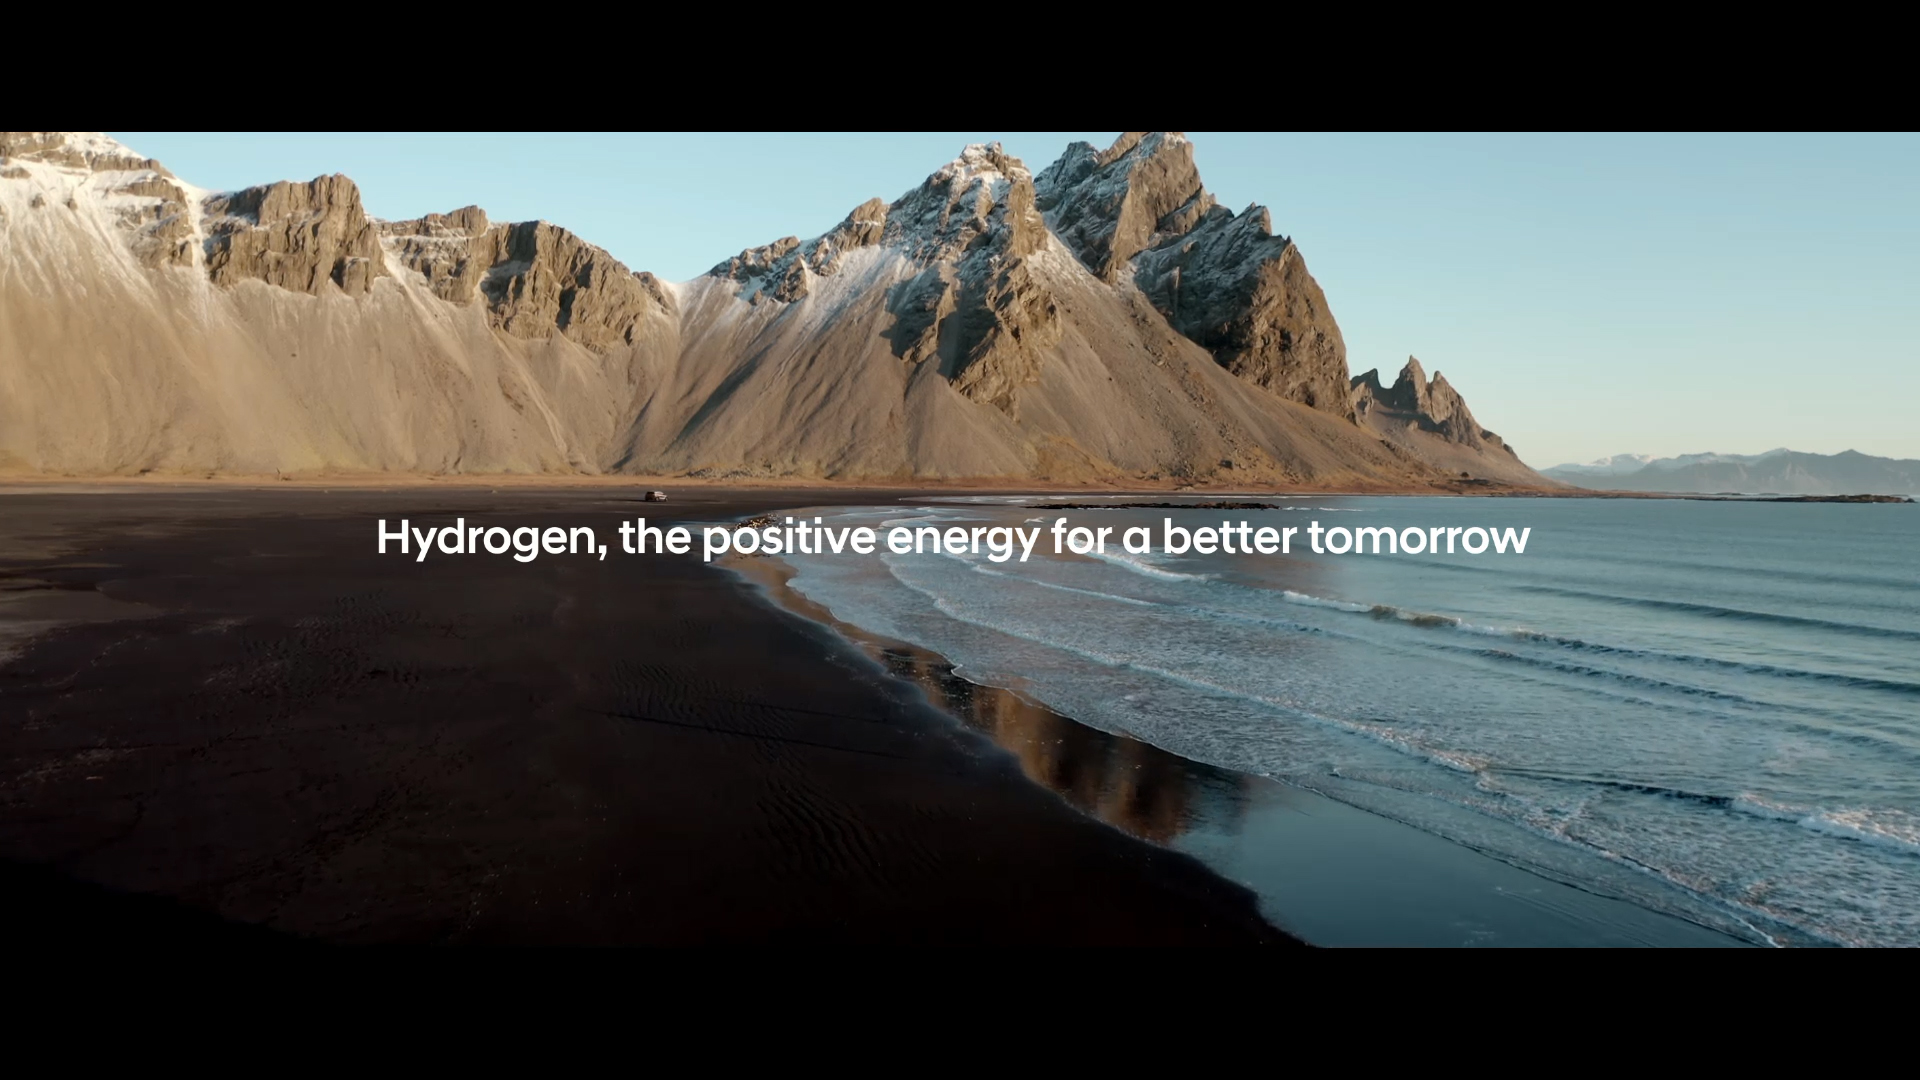 Фильм подтверждает постоянную приверженность Hyundai к устойчивому будущему, одновременно напоминая о том, как сохранить нашу планету чистой и не принимать как должное все дары природы.